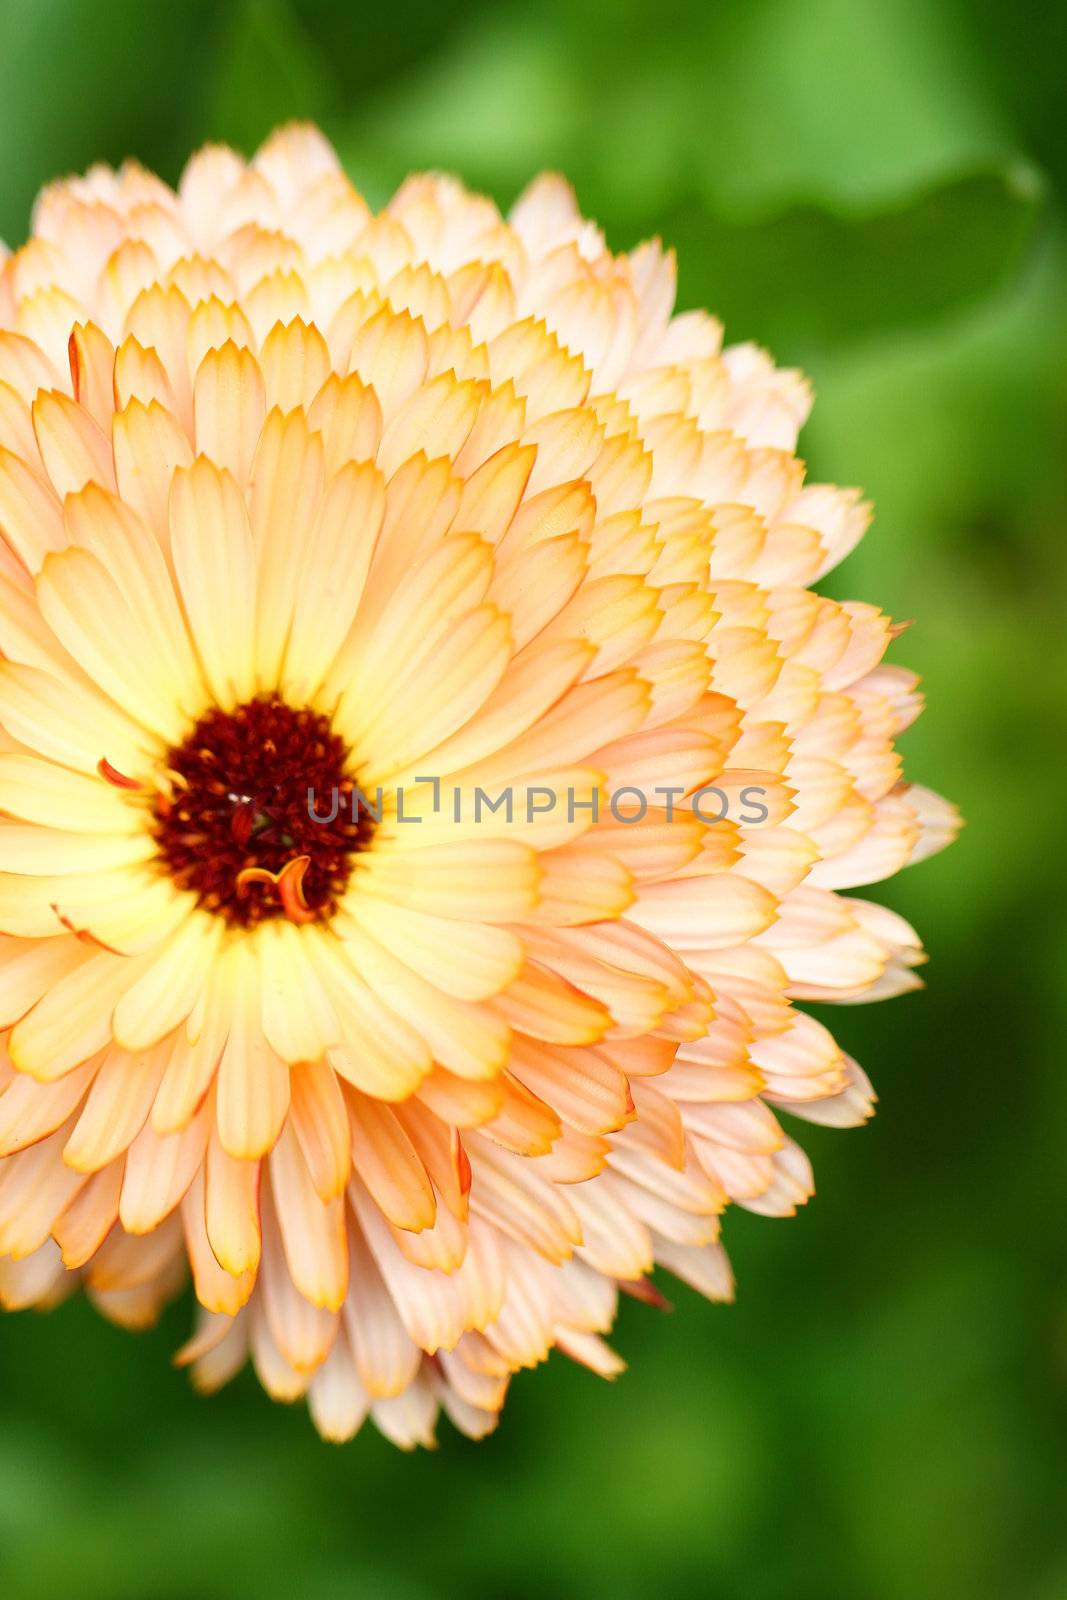 Orange chrysanthemum close-up